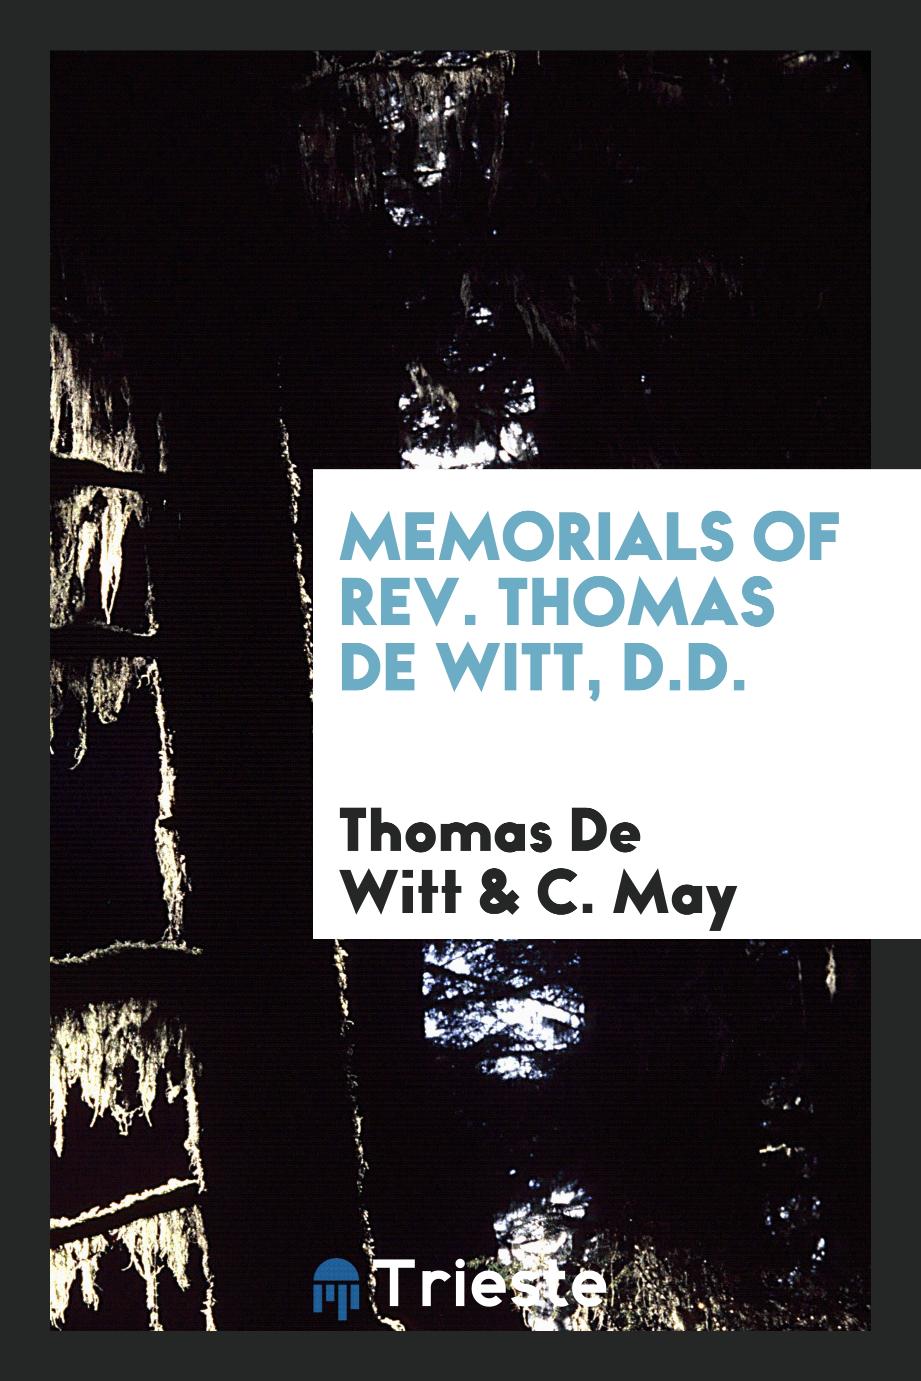 Memorials of Rev. Thomas De Witt, D.D.